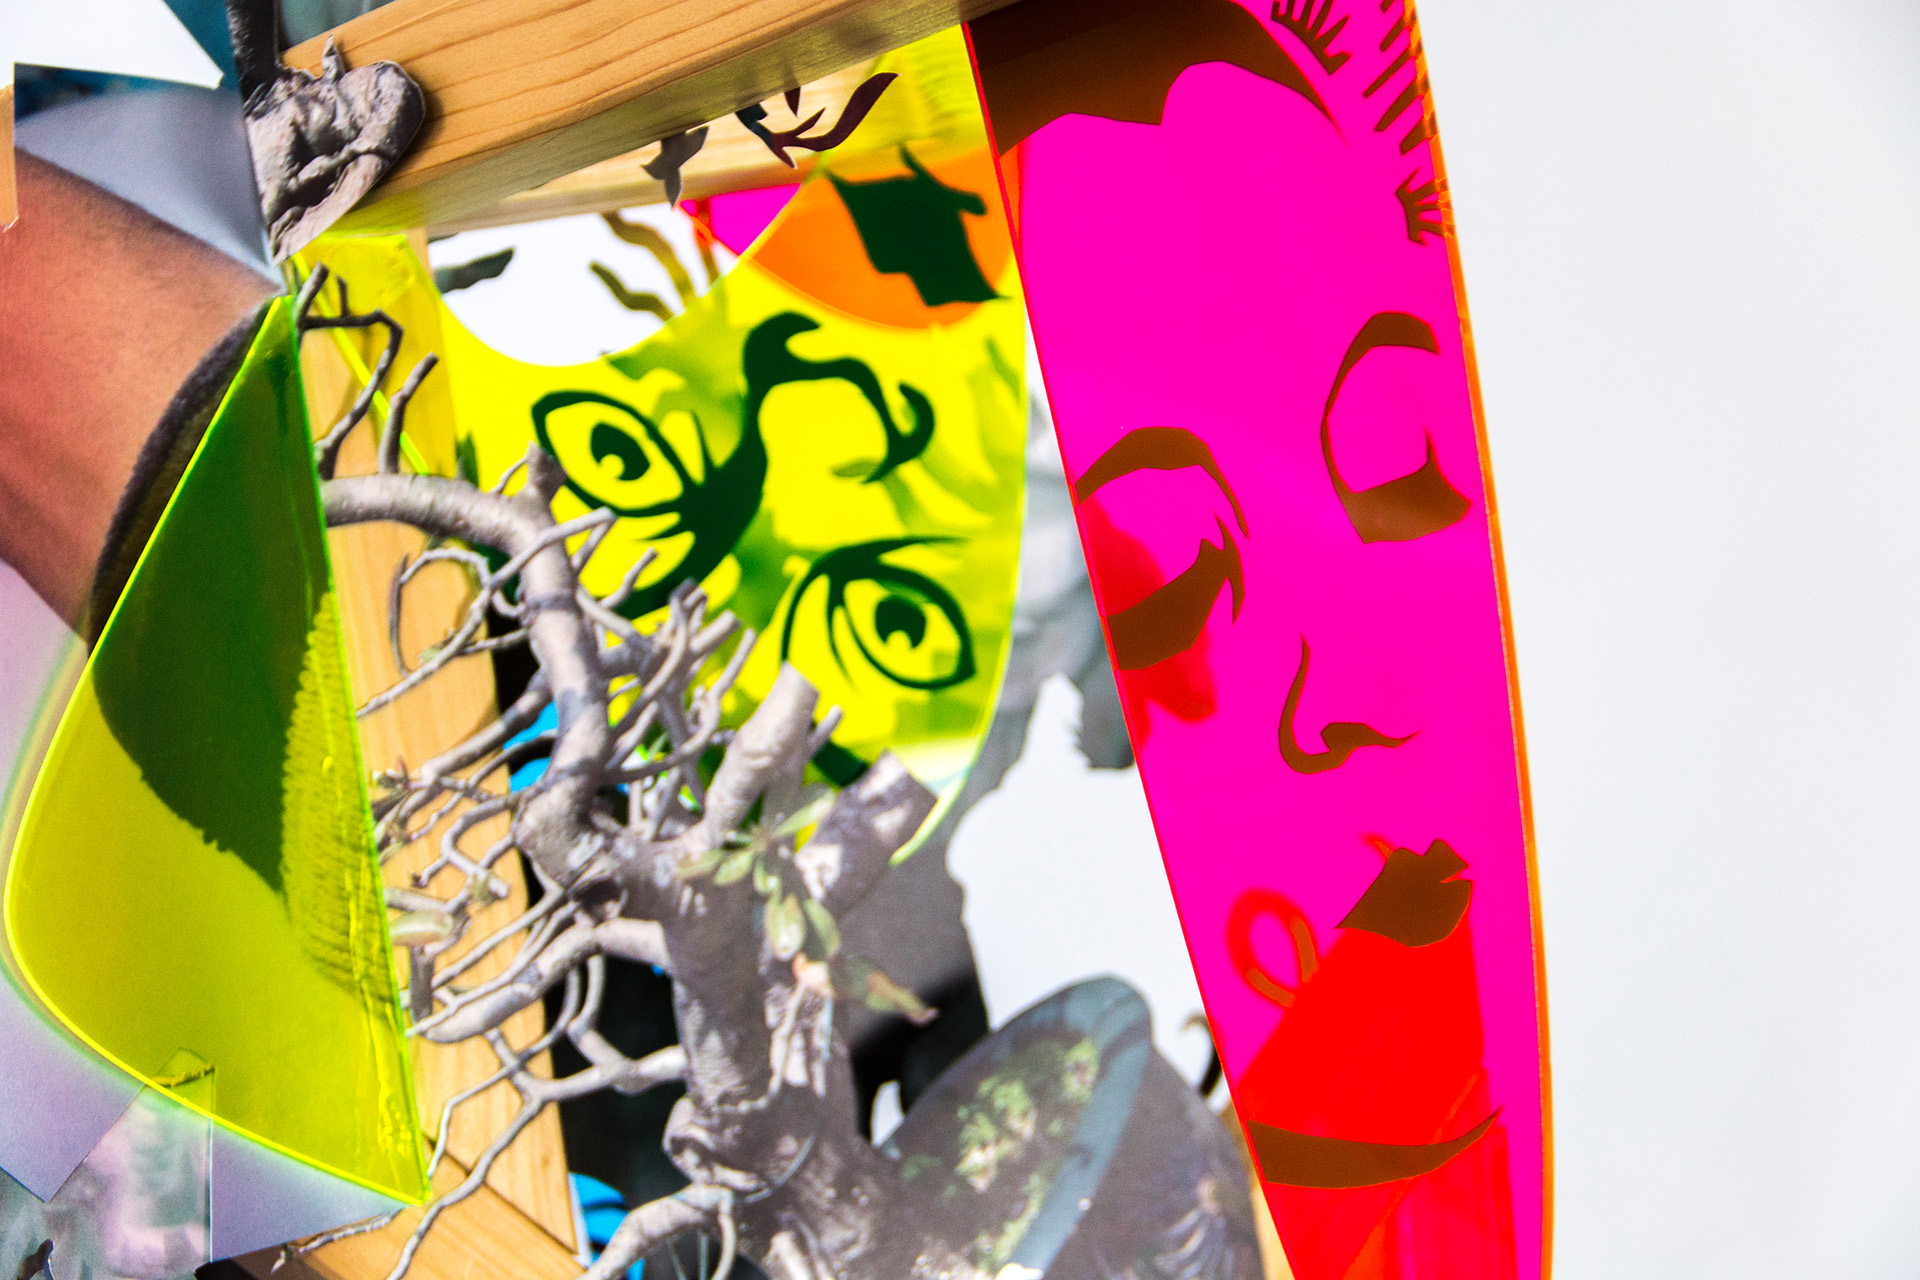 Detailansicht der Plastik "Selbstgespräche mit Frau A" bestehend aus Holz, Papier, Plexiglas und Klebefolien. Geschaffen von der Künstlerin Wiebke Kirchner im Jahr 2019.